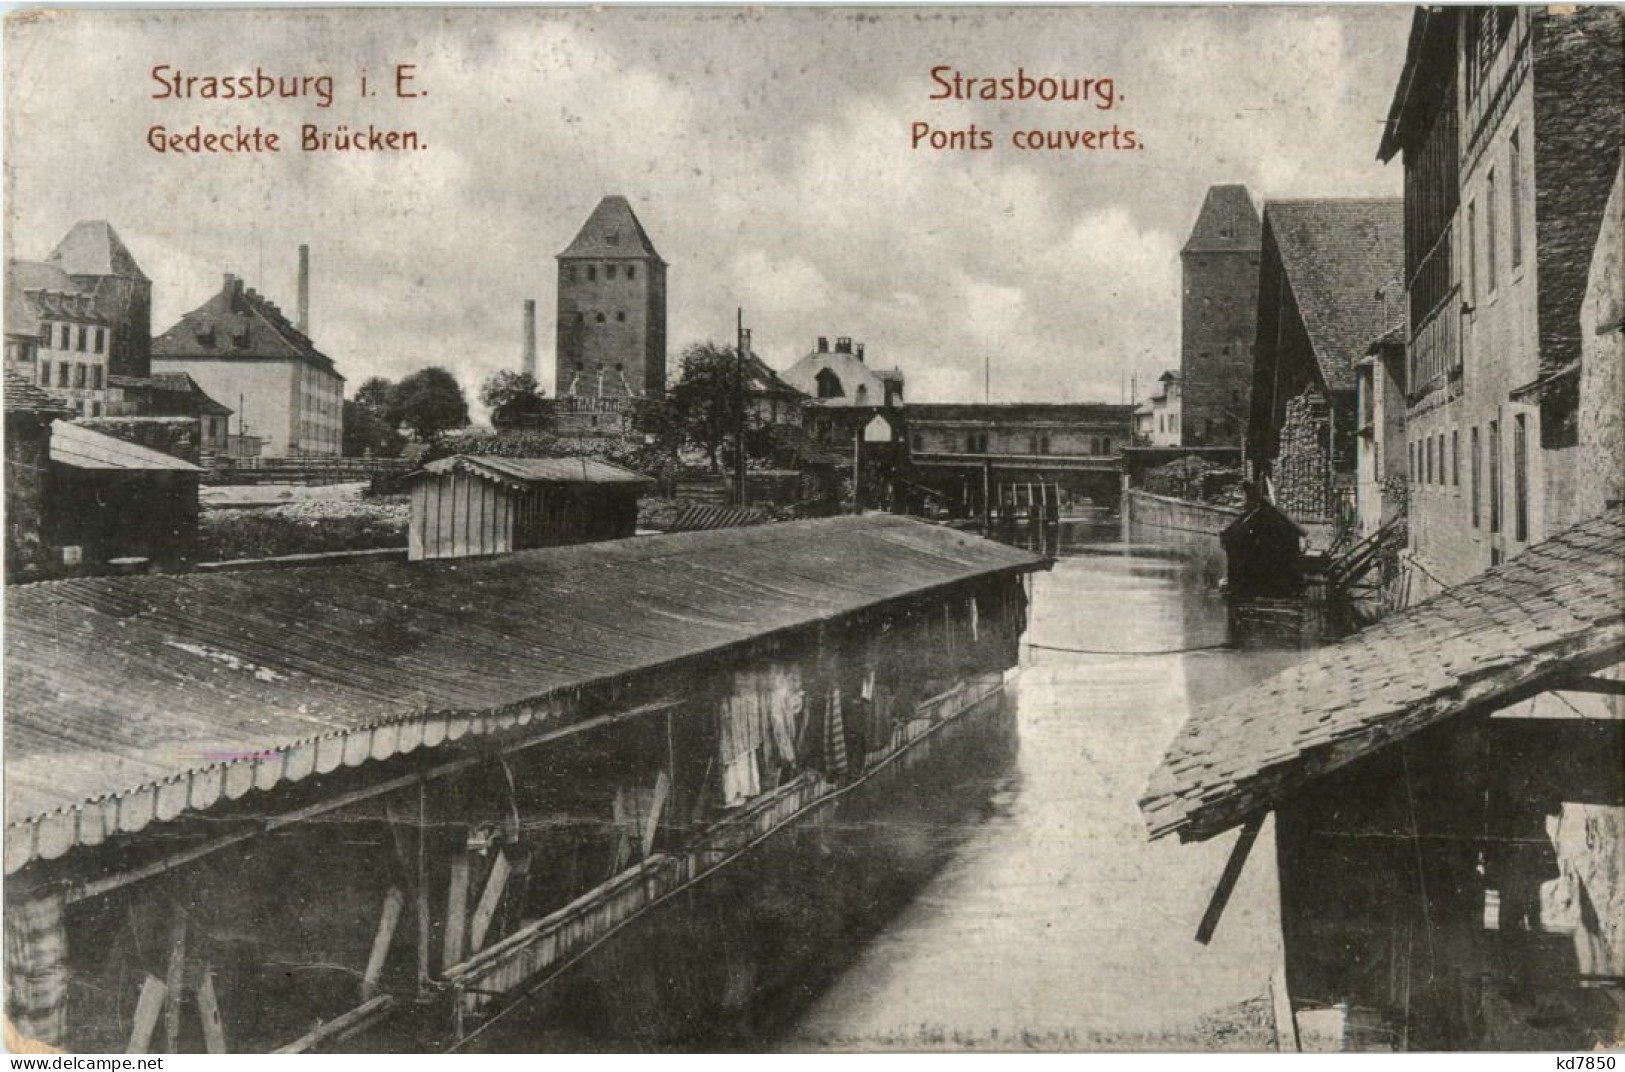 Strassburg - Gedeckte Brücken - Strasbourg